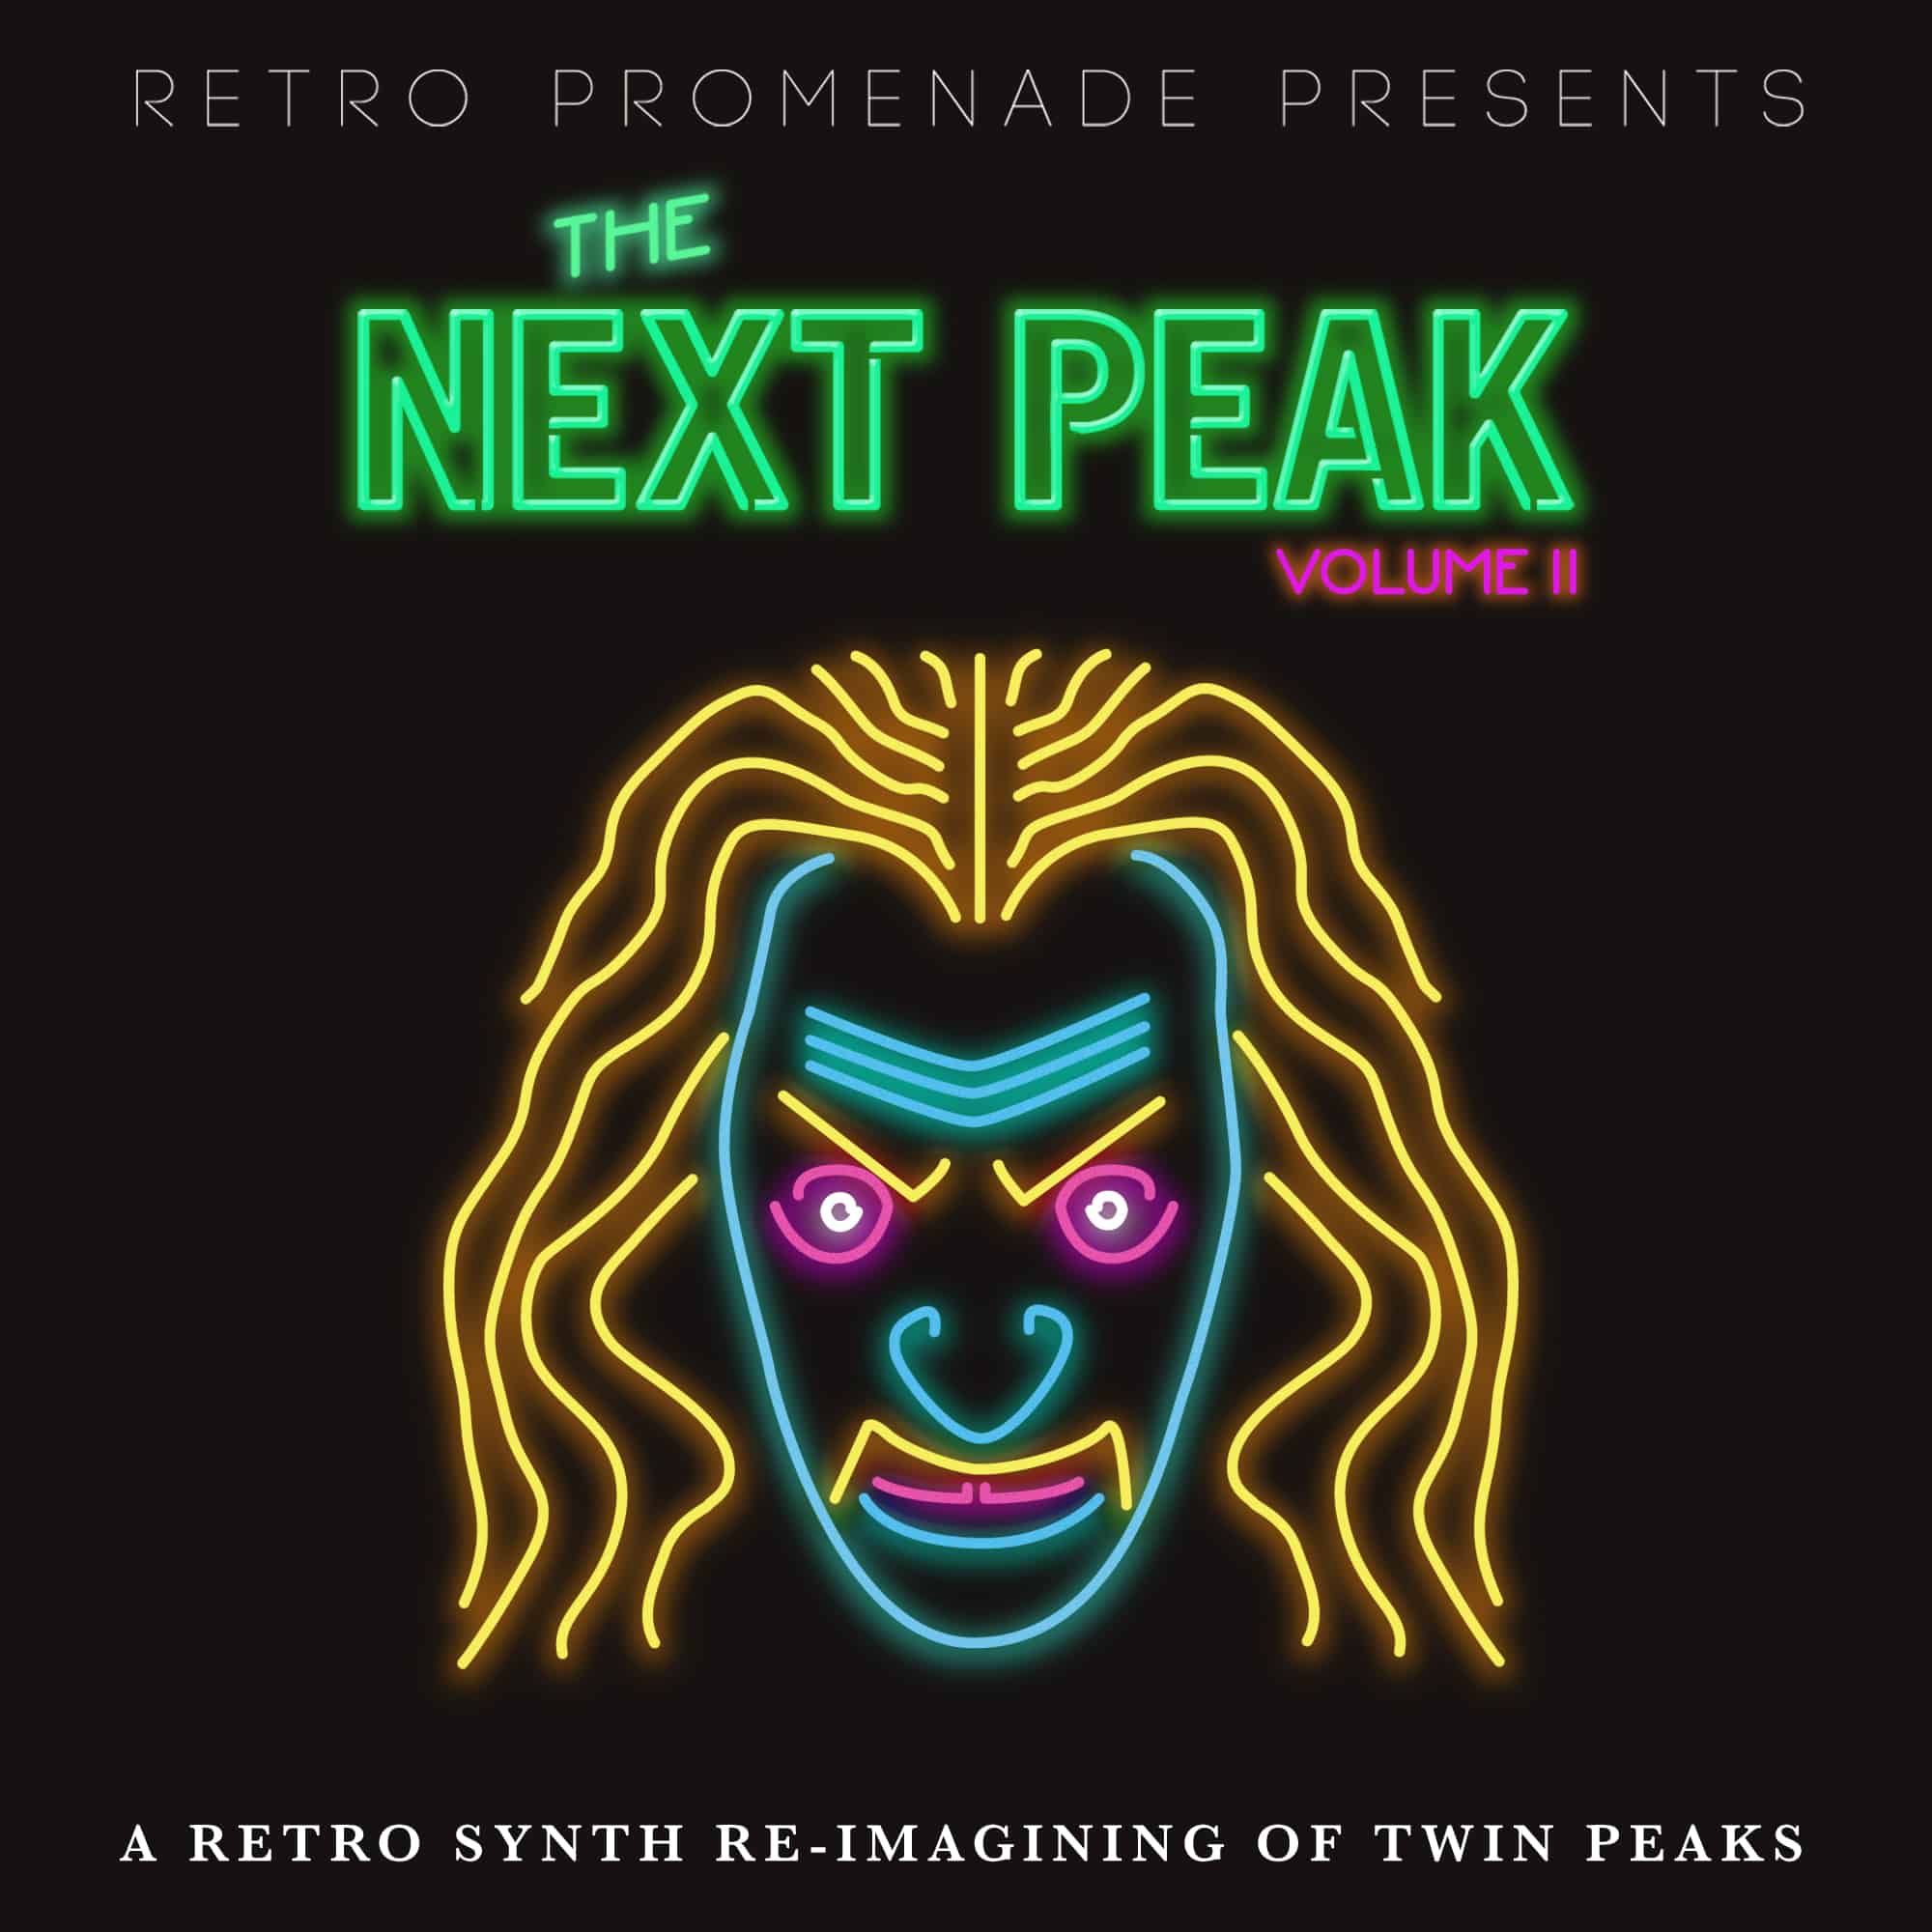 Twin Peaks Reboot Peaks, Reimagining Cult Classic